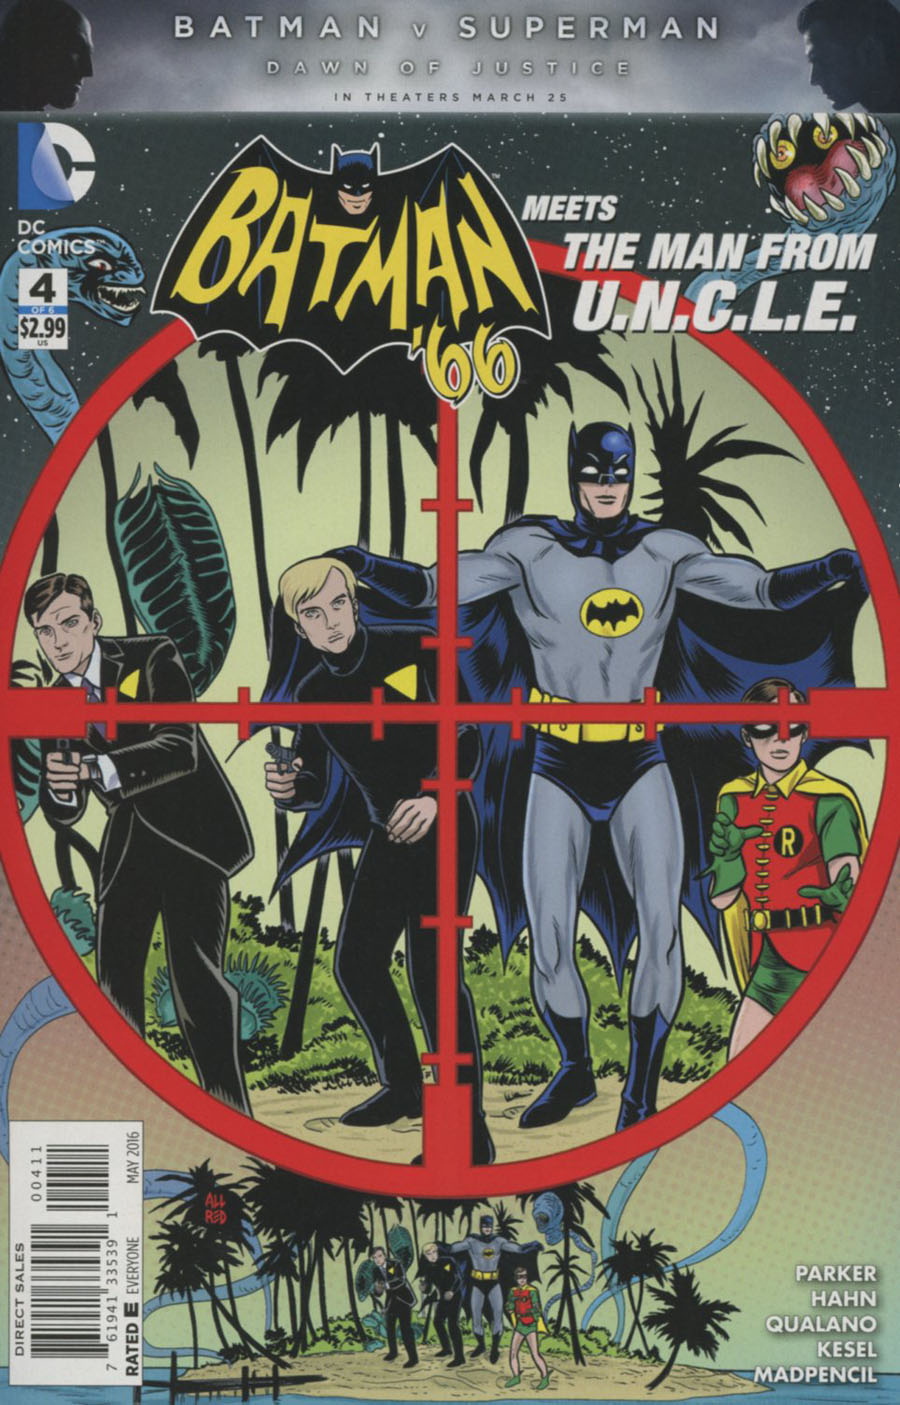 Batman 66 Meets The Man From U.N.C.L.E. #4